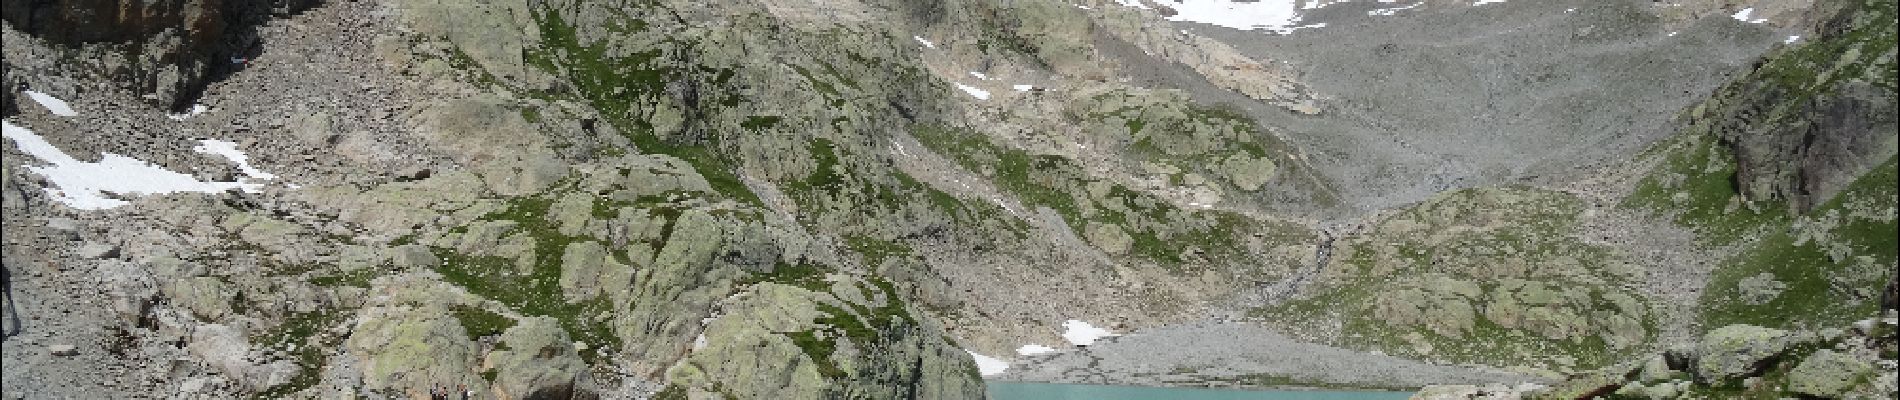 POI Chamonix-Mont-Blanc - Lac Blanc - Photo